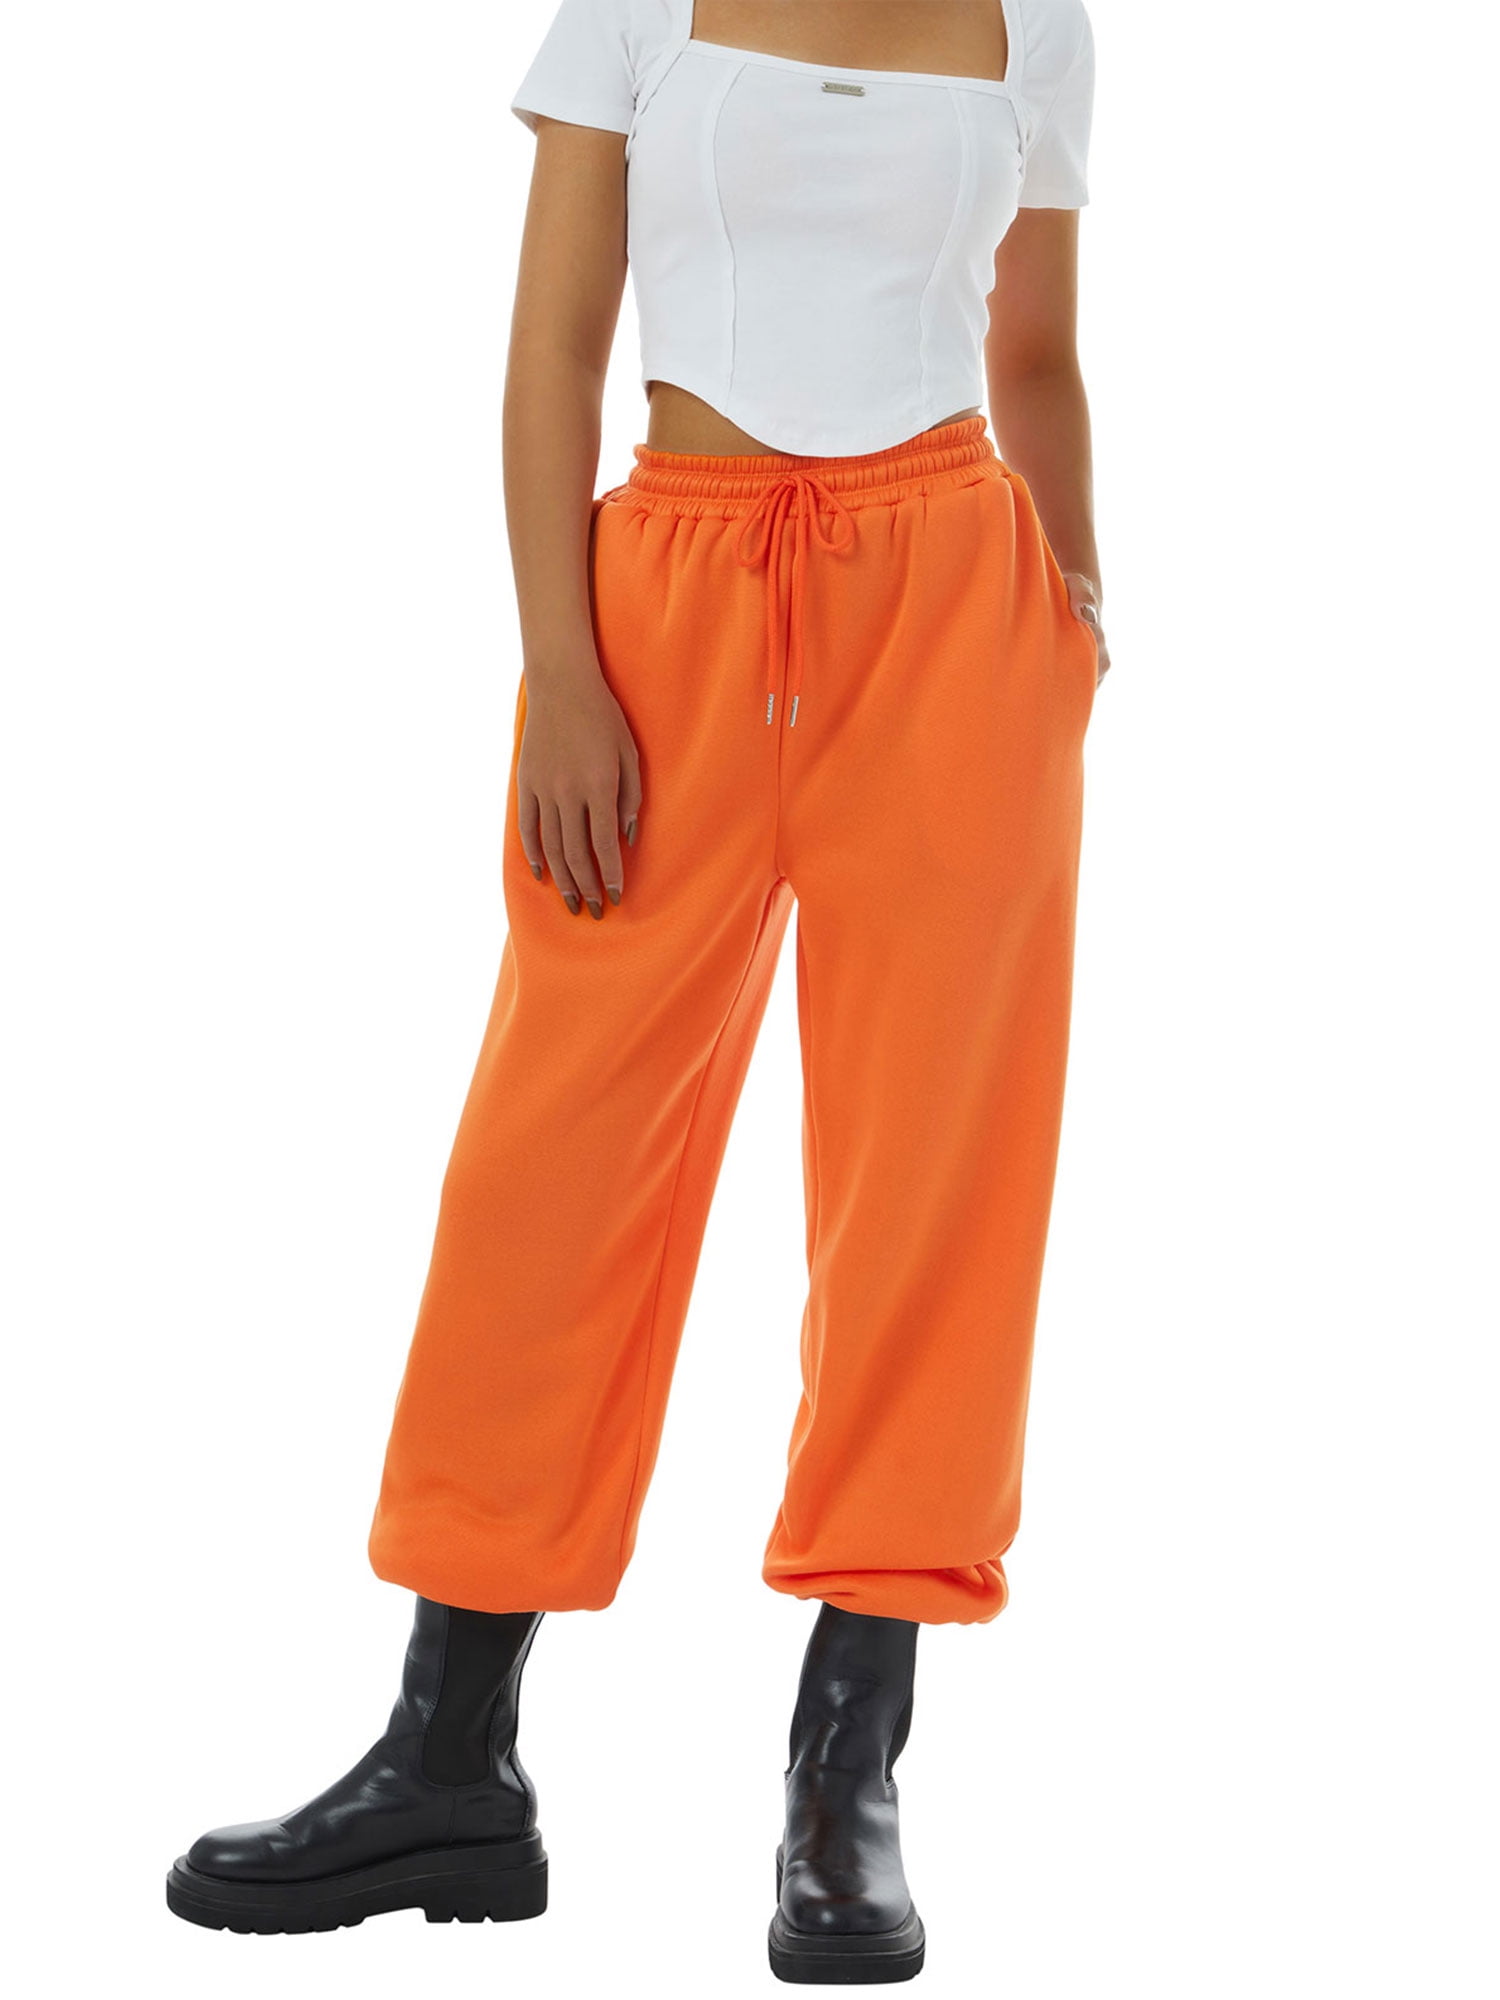 Kolliey Summer Streetwear Black Sweatpants Women 2022 High Waist Skinny  Flare Pants Female Orange Casual Fashion Long Trousers - Pants & Capris -  AliExpress